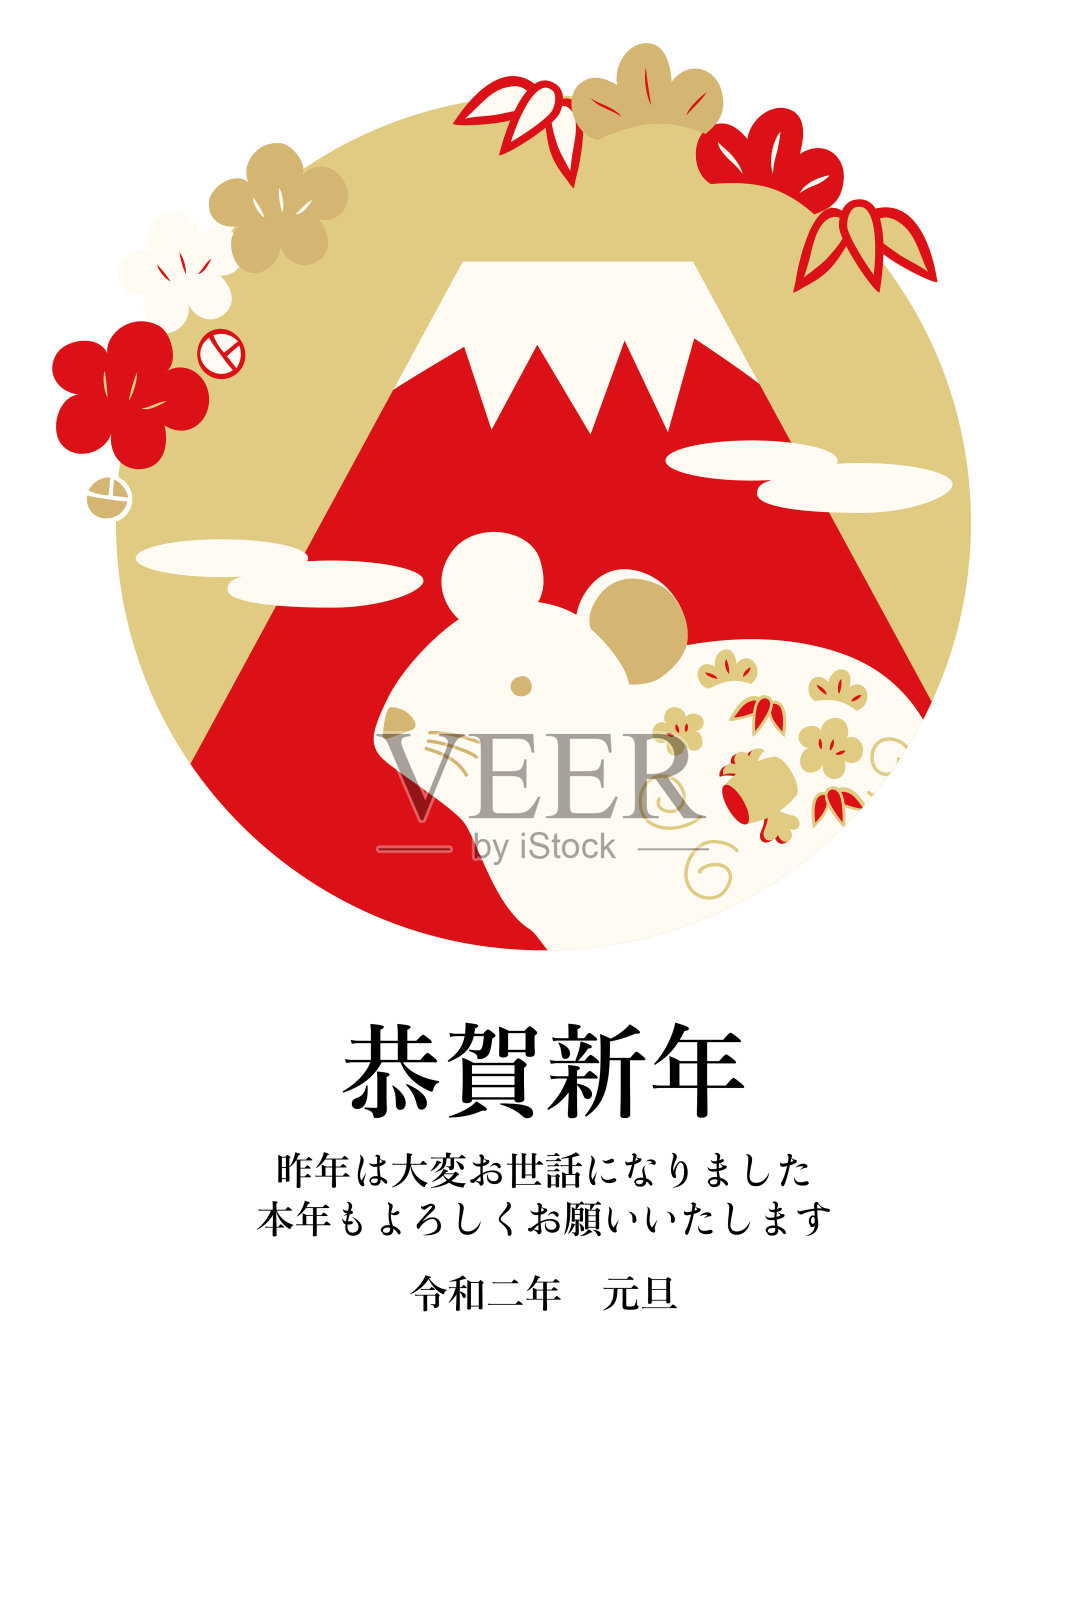 富士山与小白鼠图案的贺年卡(金红版加志)插画图片素材